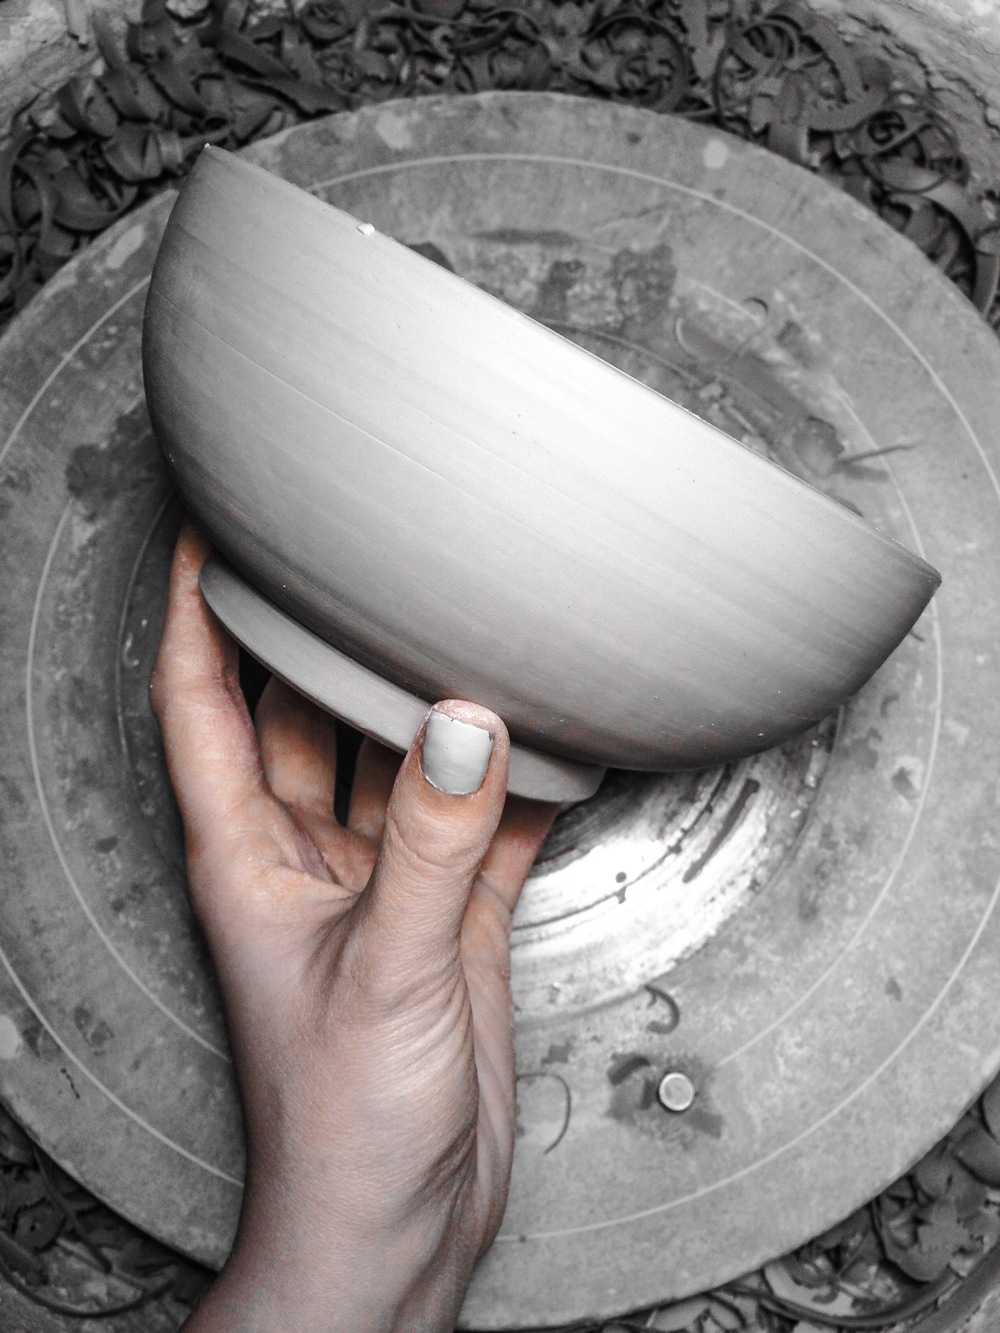 Trimming a Porcelain Bowl